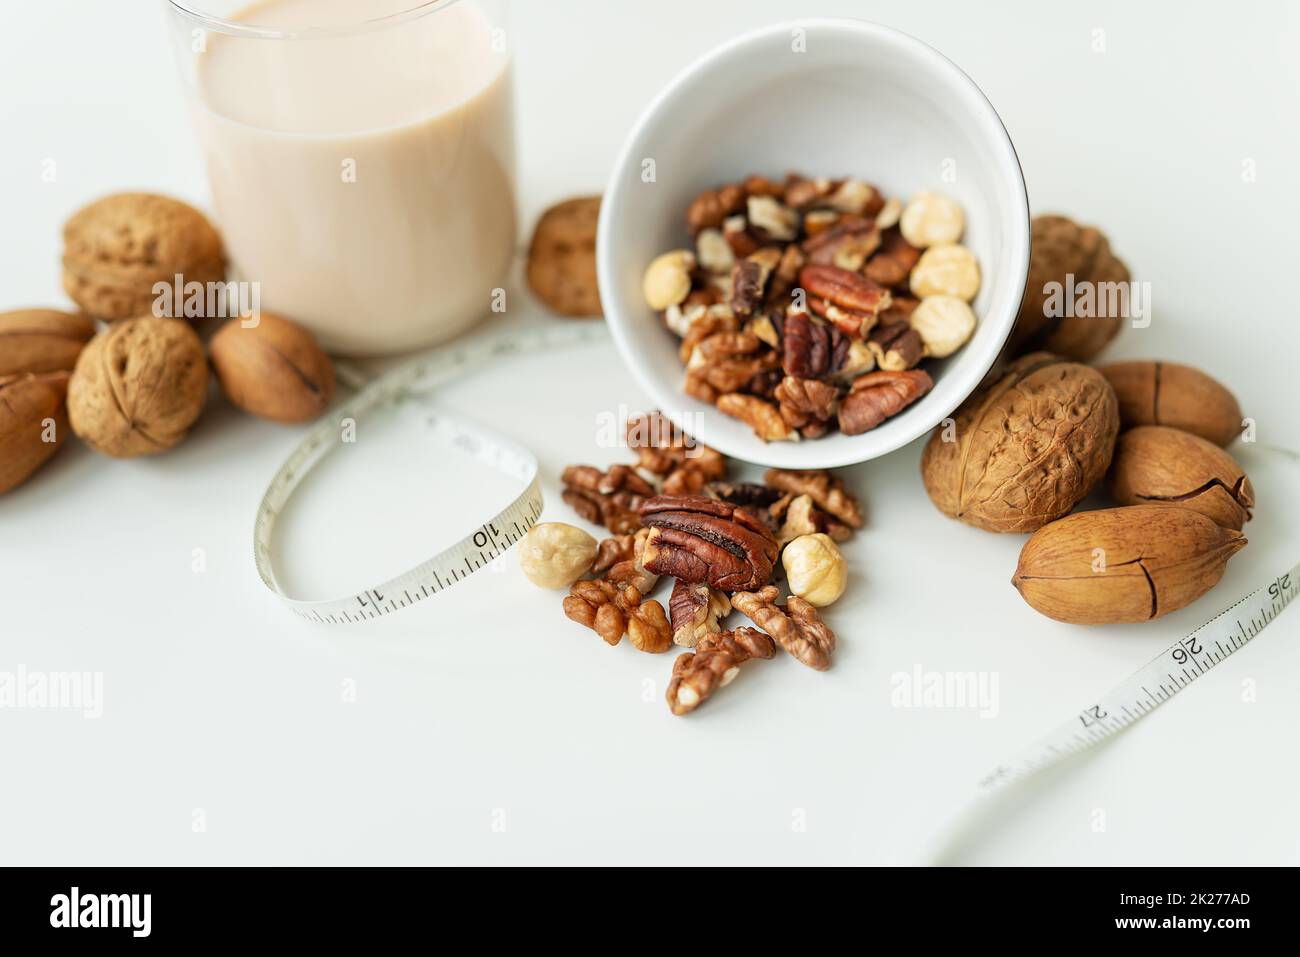 Vegane Milch aus Nüssen in einem Glasbecher mit verschiedenen Nüssen auf einem weißen Tisch. Nüsse in einer Schüssel. Kalorienarme Milch zur Unterstützung des Körpers. Stockfoto